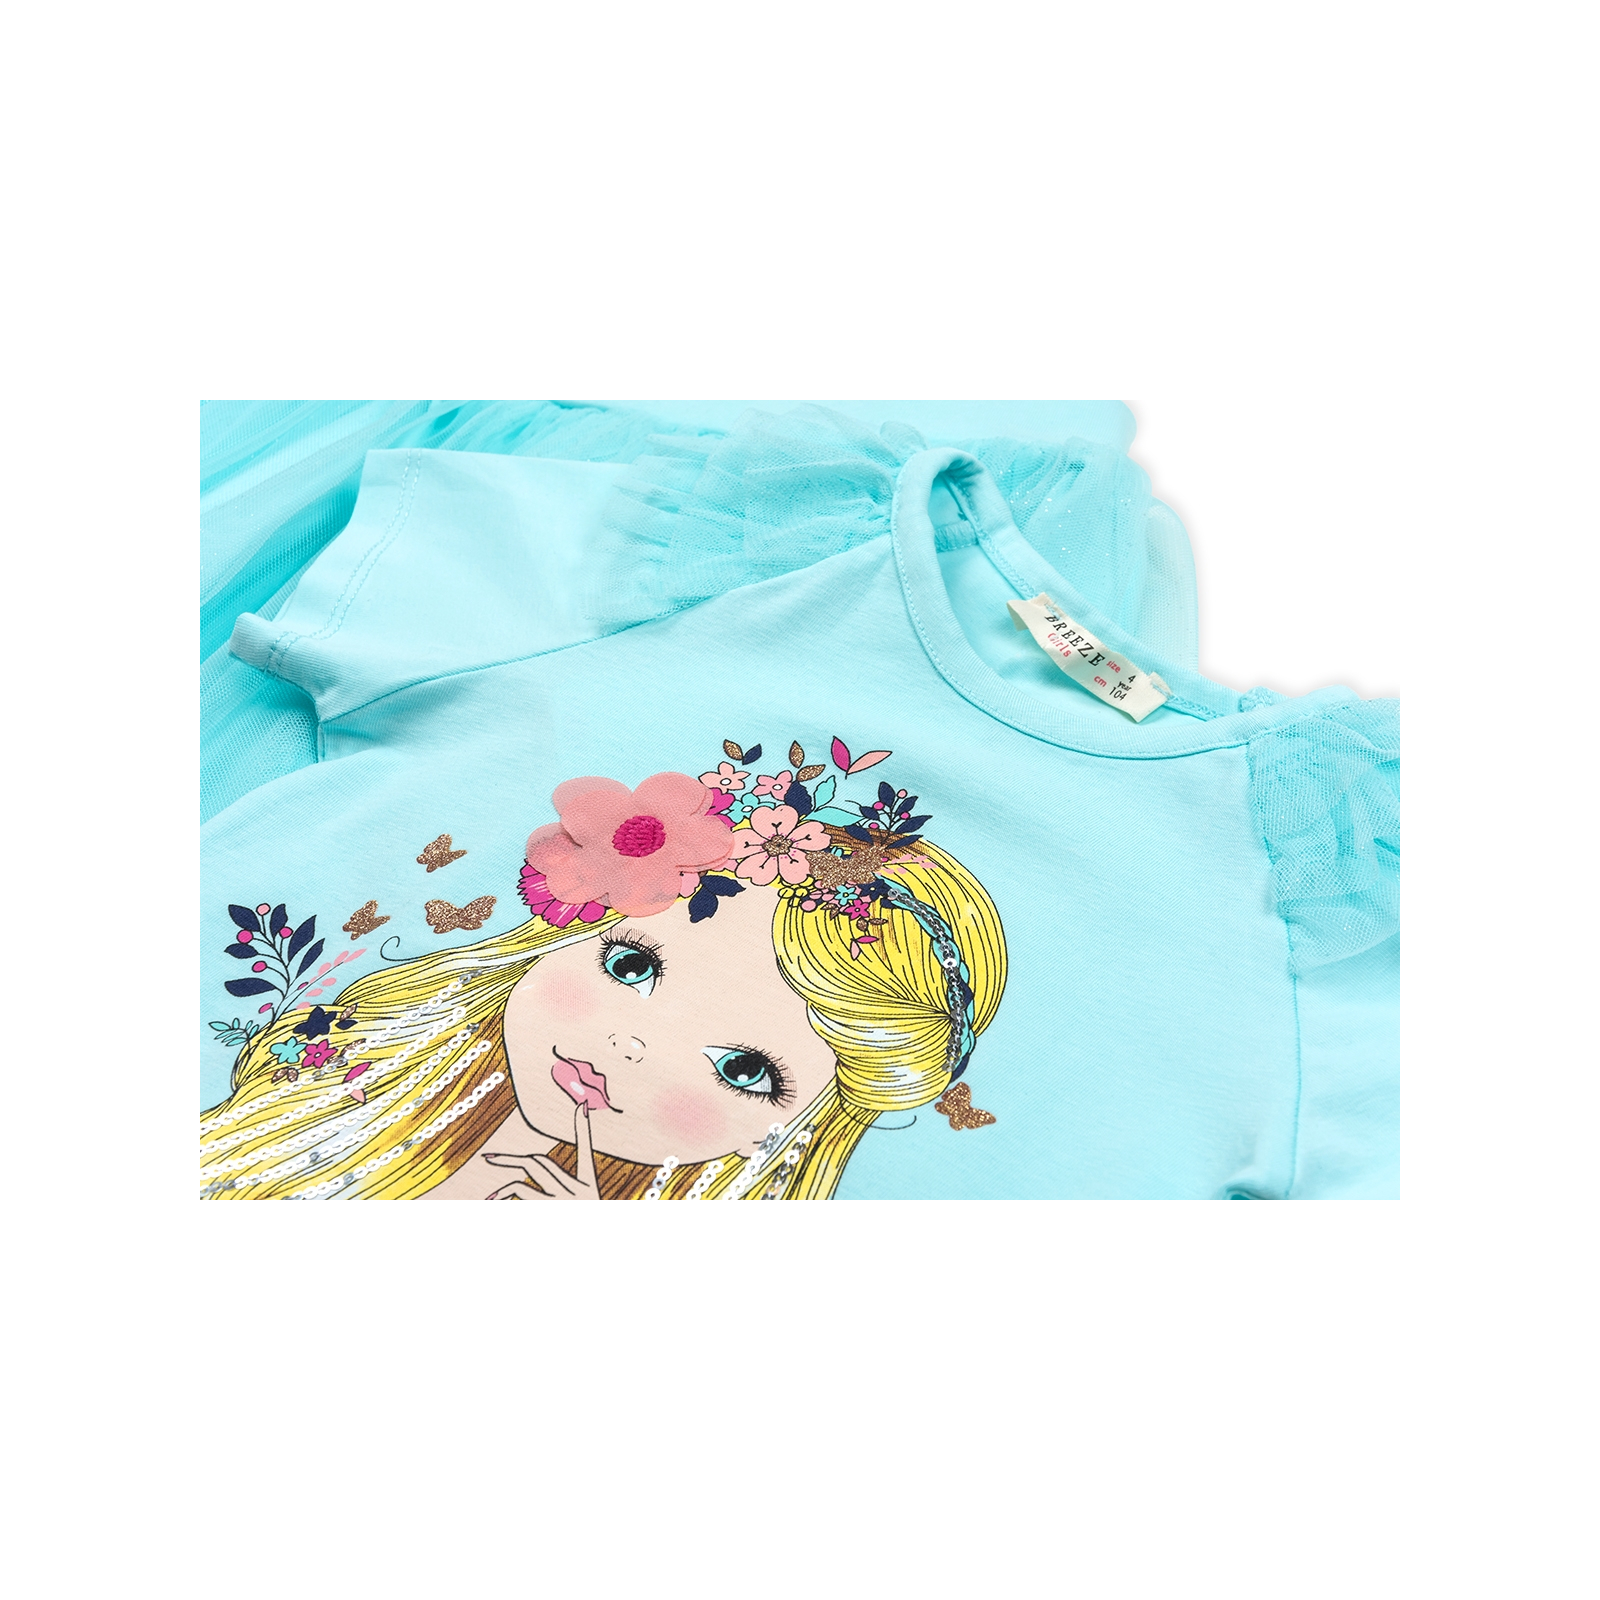 Набор детской одежды Breeze с девочкой и фатиновой юбкой (11826-110B-blue) изображение 4